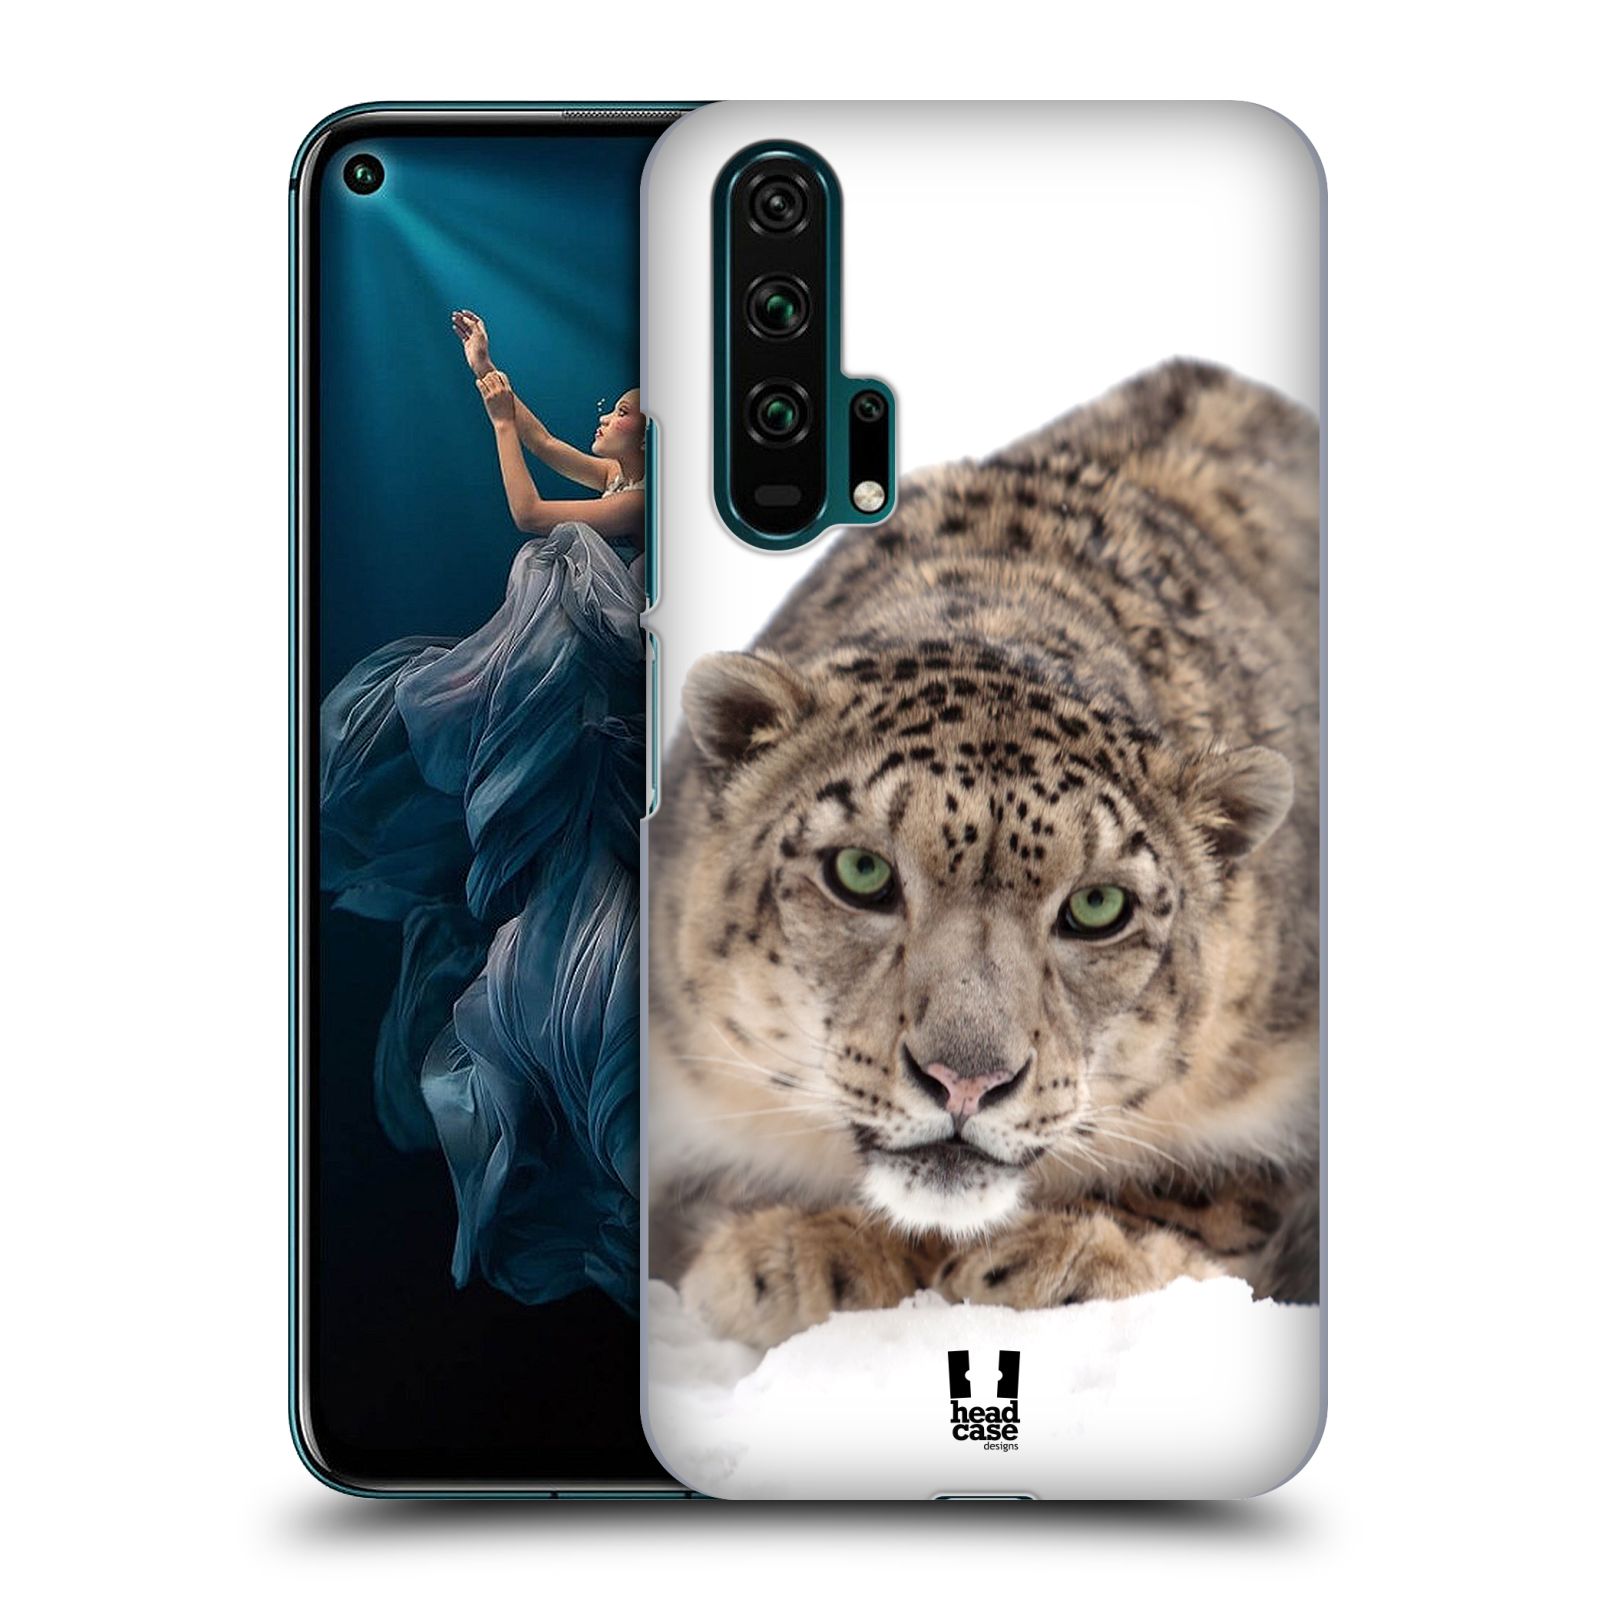 Pouzdro na mobil Honor 20 PRO - HEAD CASE - vzor Divočina, Divoký život a zvířata foto SNĚŽNÝ LEOPARD